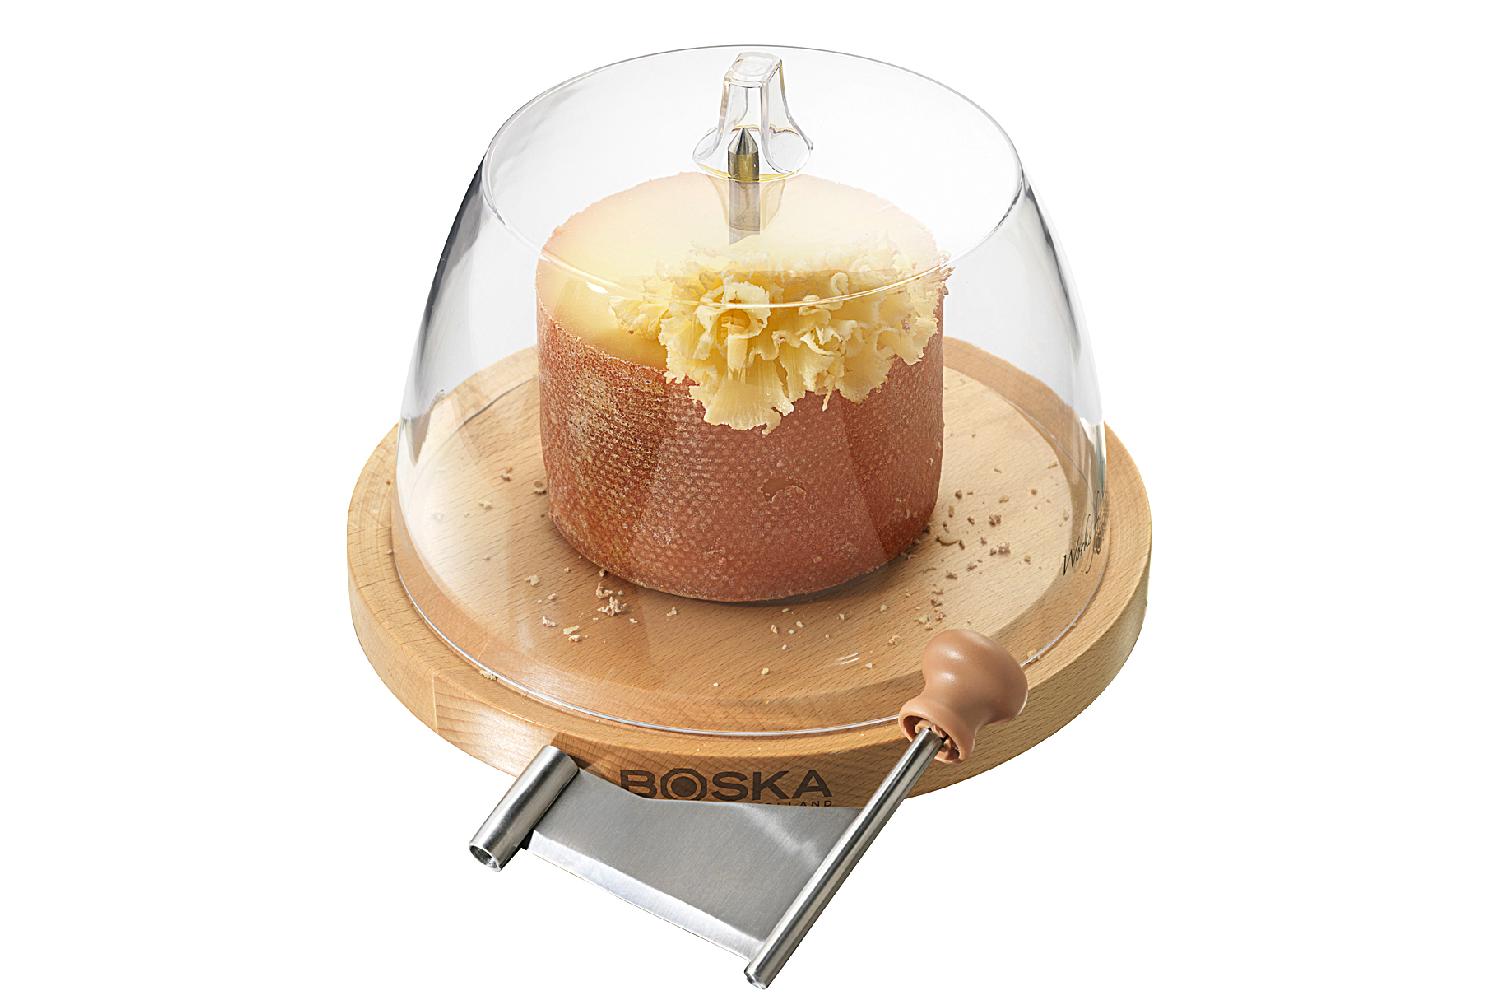 Käseschaber mit Glocke Amigo Platte/Buchenholz, Edelstahl-Messer, mit 5 Zapfen  im Sockel bleibt der Käse griffig liegen